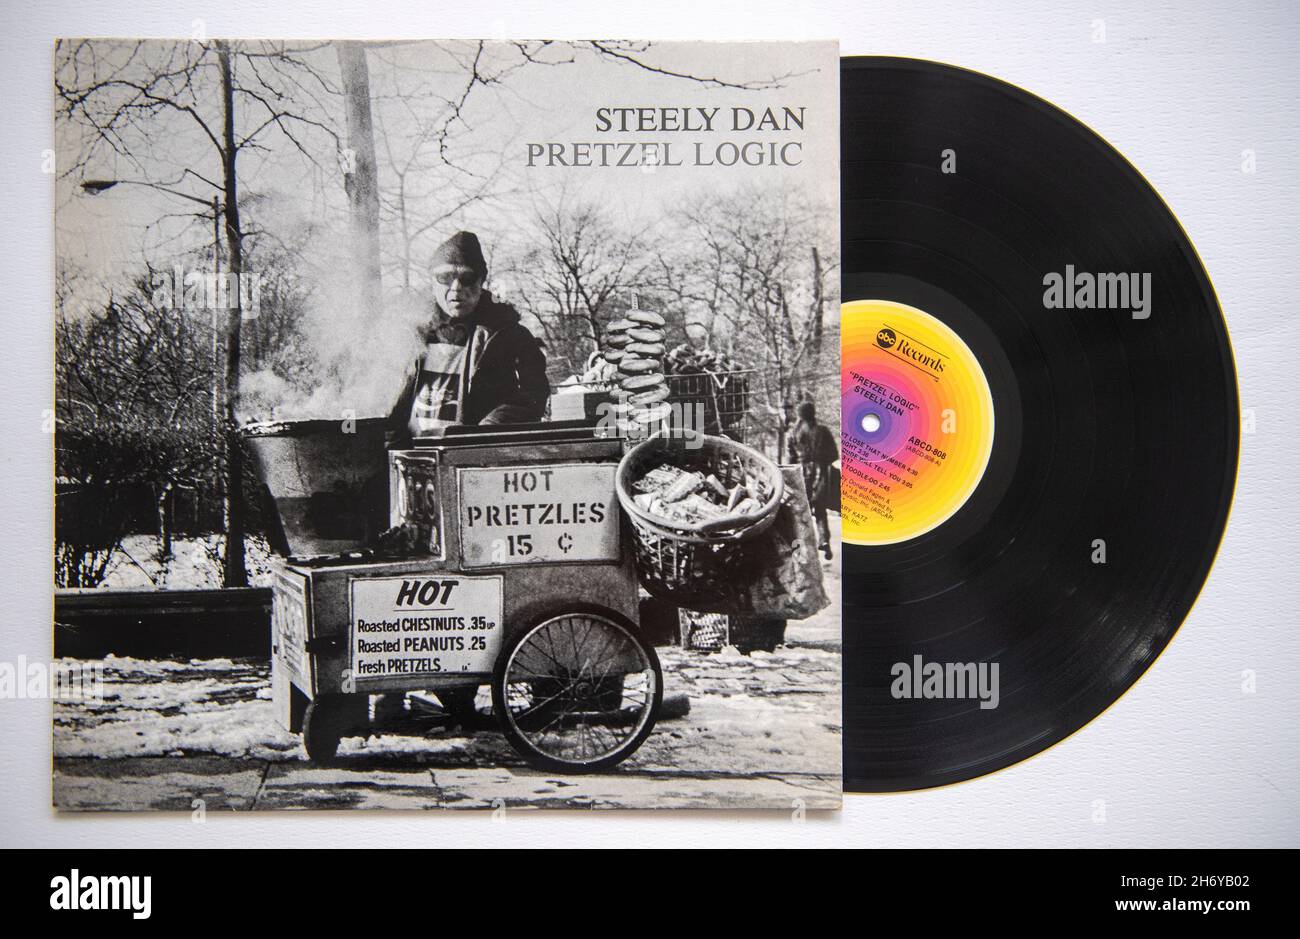 LP couverture et vinyle de l'album Pretzel Logic, sorti par le groupe américain Steely Dan en 1974 Banque D'Images